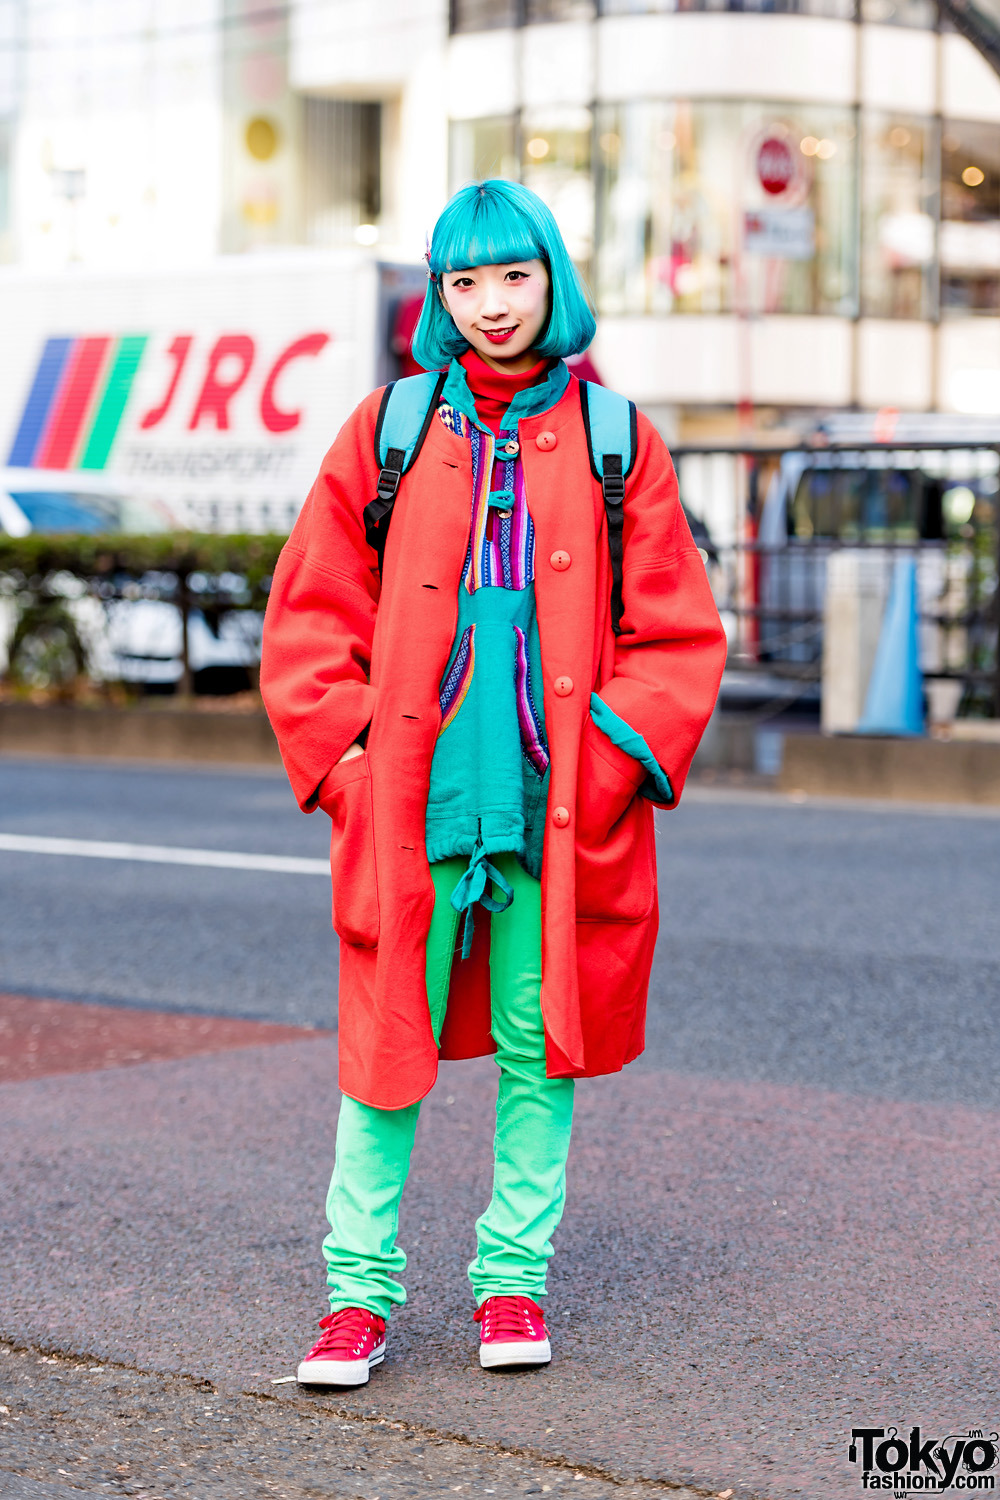 Tokyo Fashion